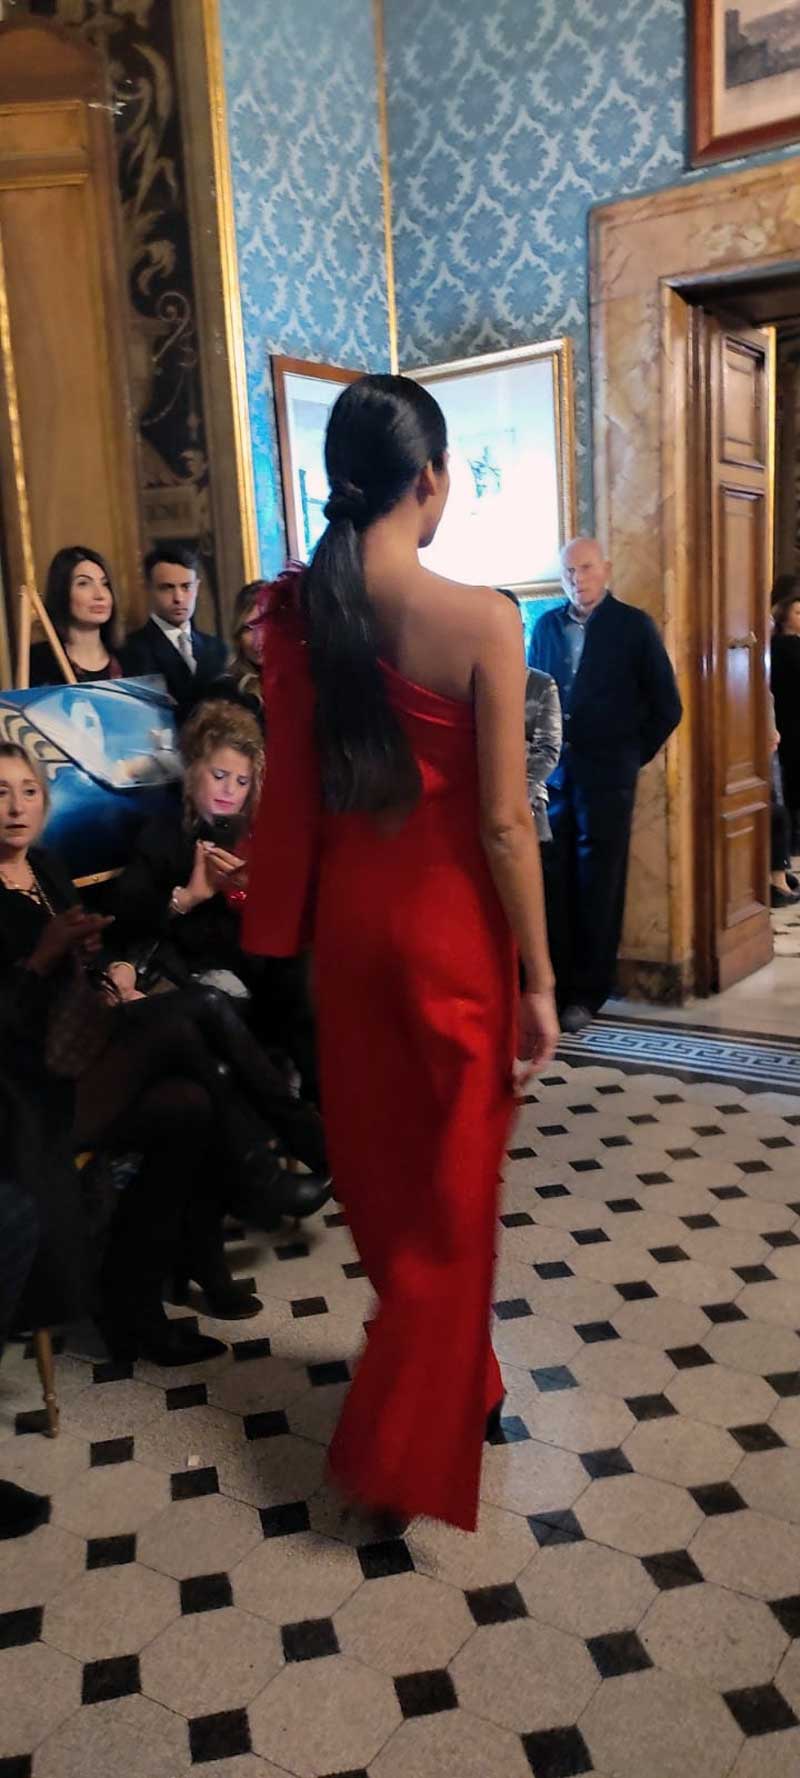 Mod’Art Roma - Il fascino dei colori - sfilata modelle nello storico Palazzo Ferrajoli - evento d’alta moda con gli eleganti abiti di Elins moda abito semplice elegante in rosso